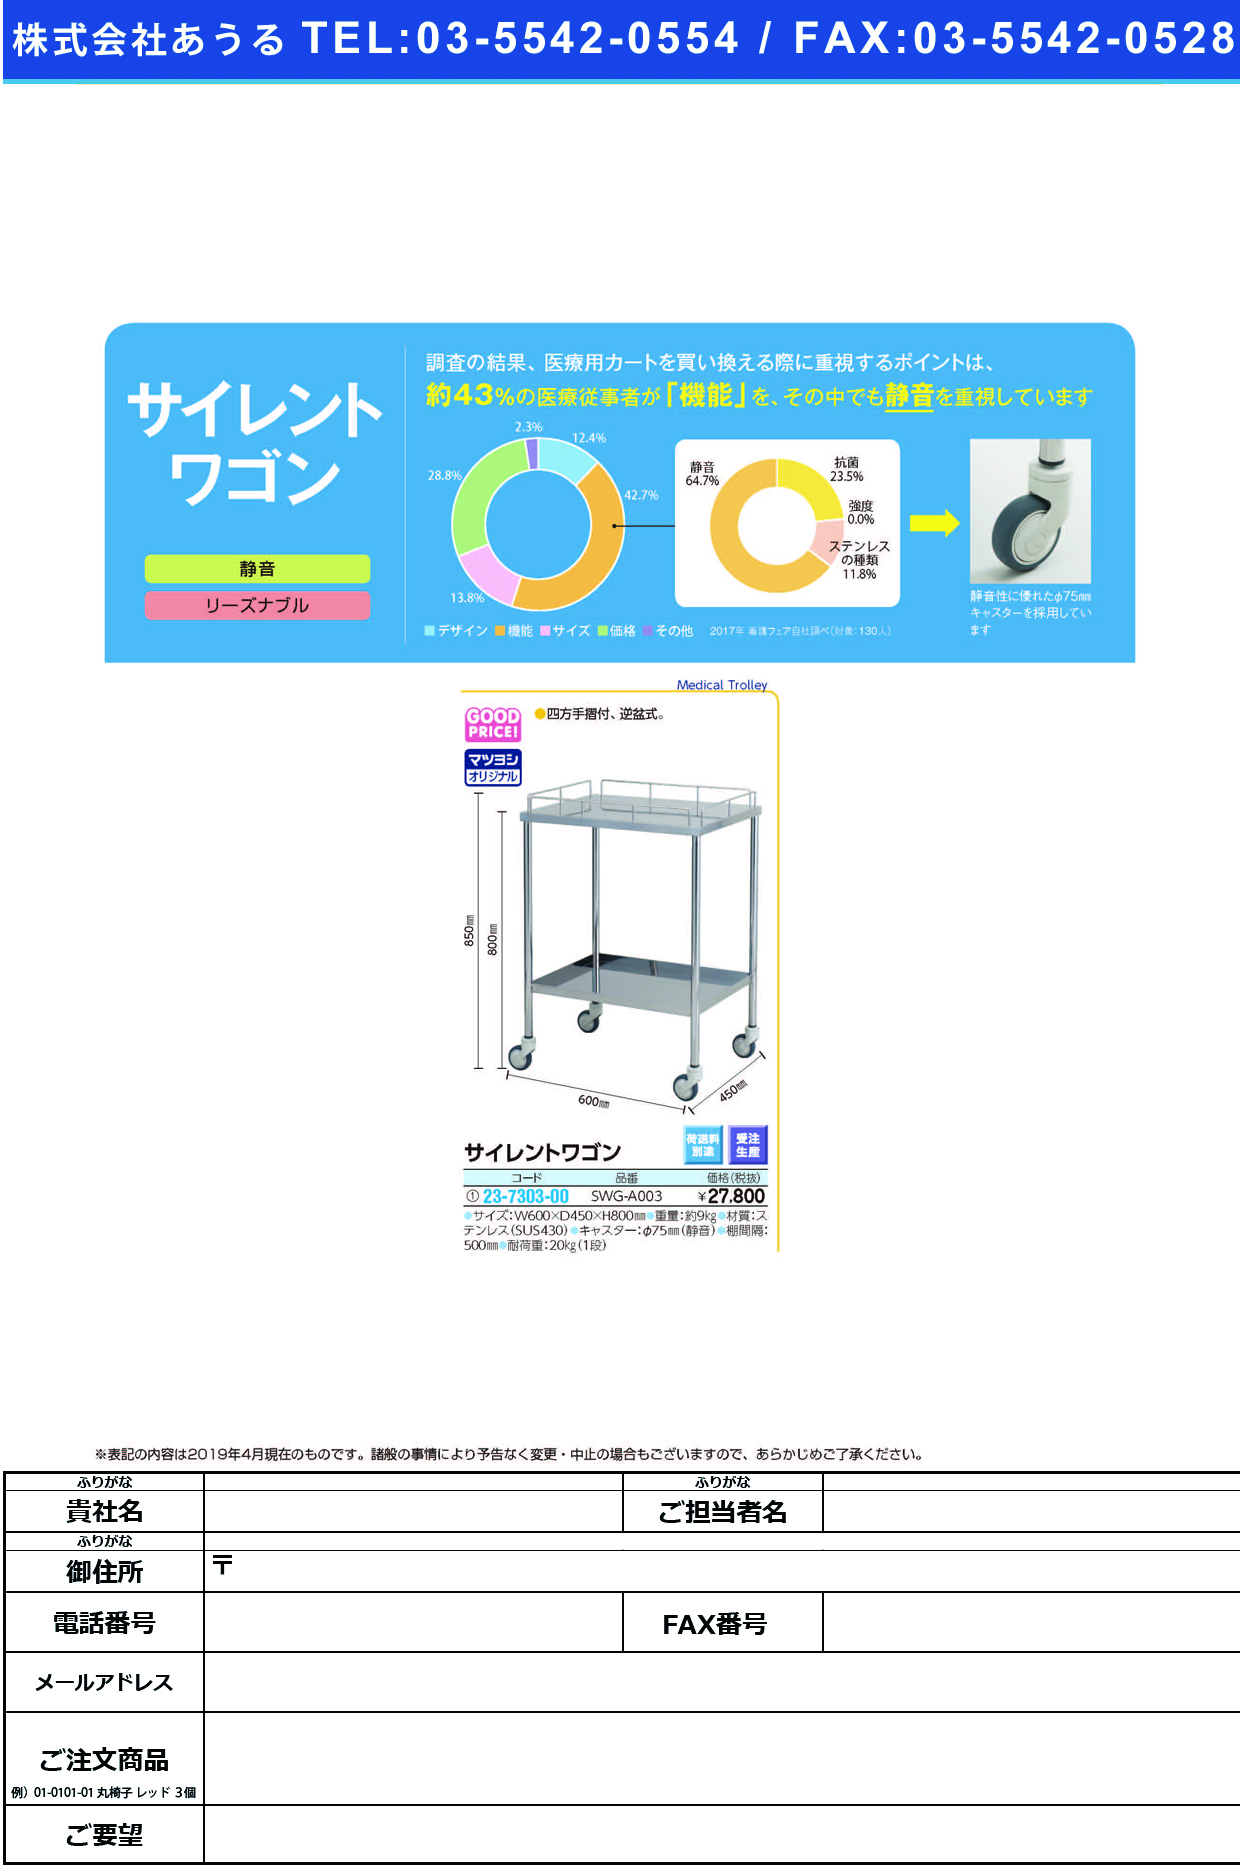 (23-7303-00)サイレントワゴン SWG-A003(600X450X800 ｻｲﾚﾝﾄﾜｺﾞﾝ【1台単位】【2019年カタログ商品】